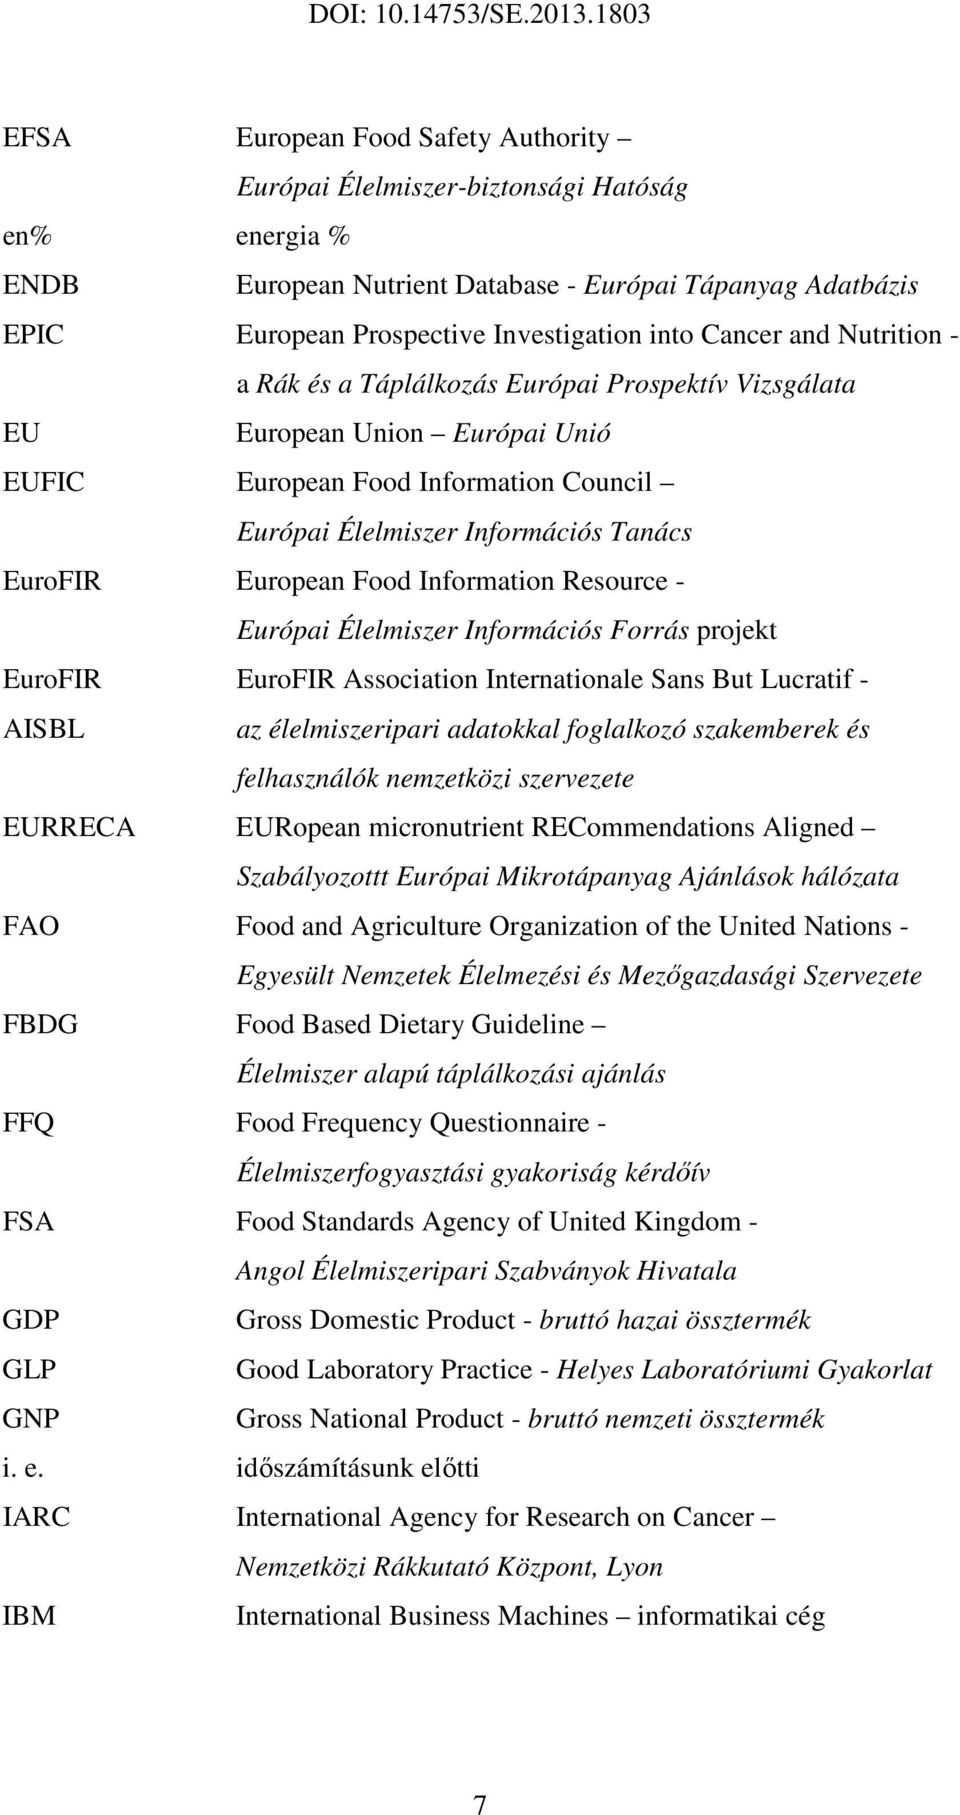 European Food Information Resource - Európai Élelmiszer Információs Forrás projekt EuroFIR AISBL EuroFIR Association Internationale Sans But Lucratif - az élelmiszeripari adatokkal foglalkozó